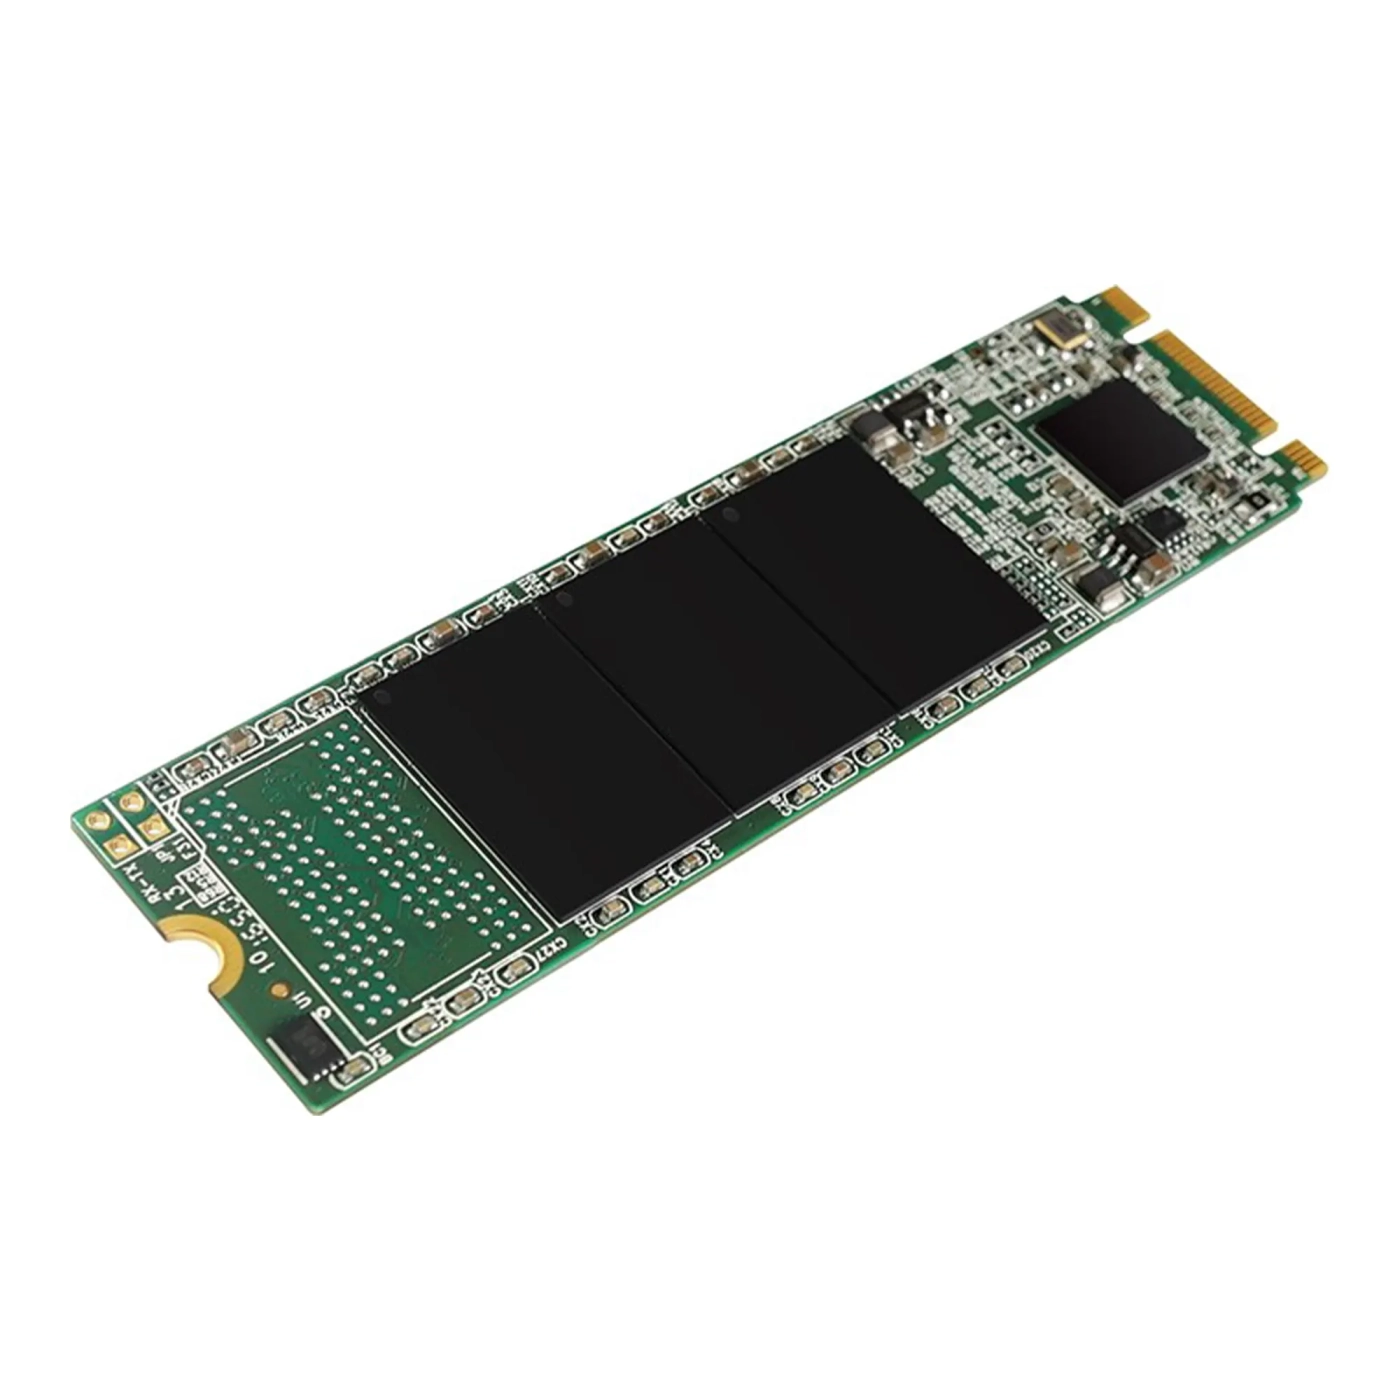 Купить SSD диск Silicon Power 128GB M.2 Sata 2280 (SP128GBSS3A55M28) - фото 2